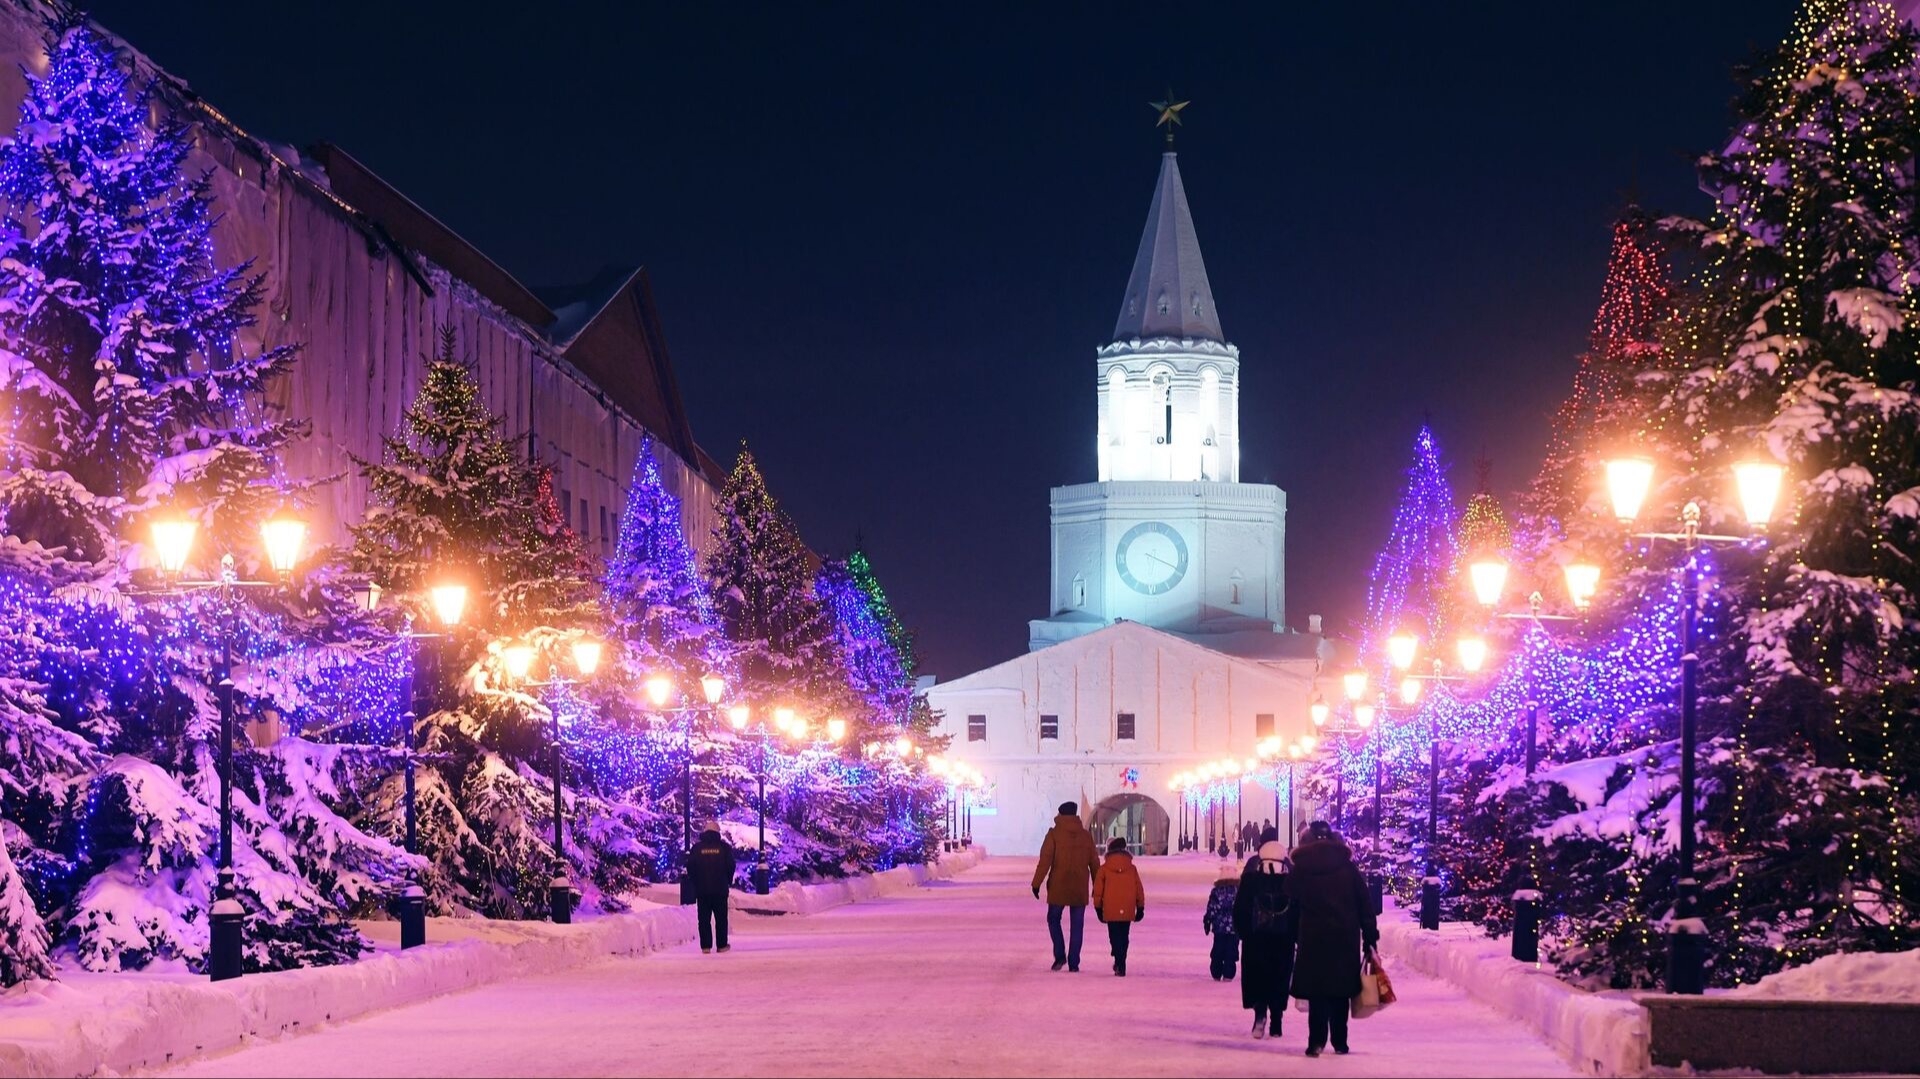 Около 160 тысяч туристов посетили Казань на новогодних каникулах